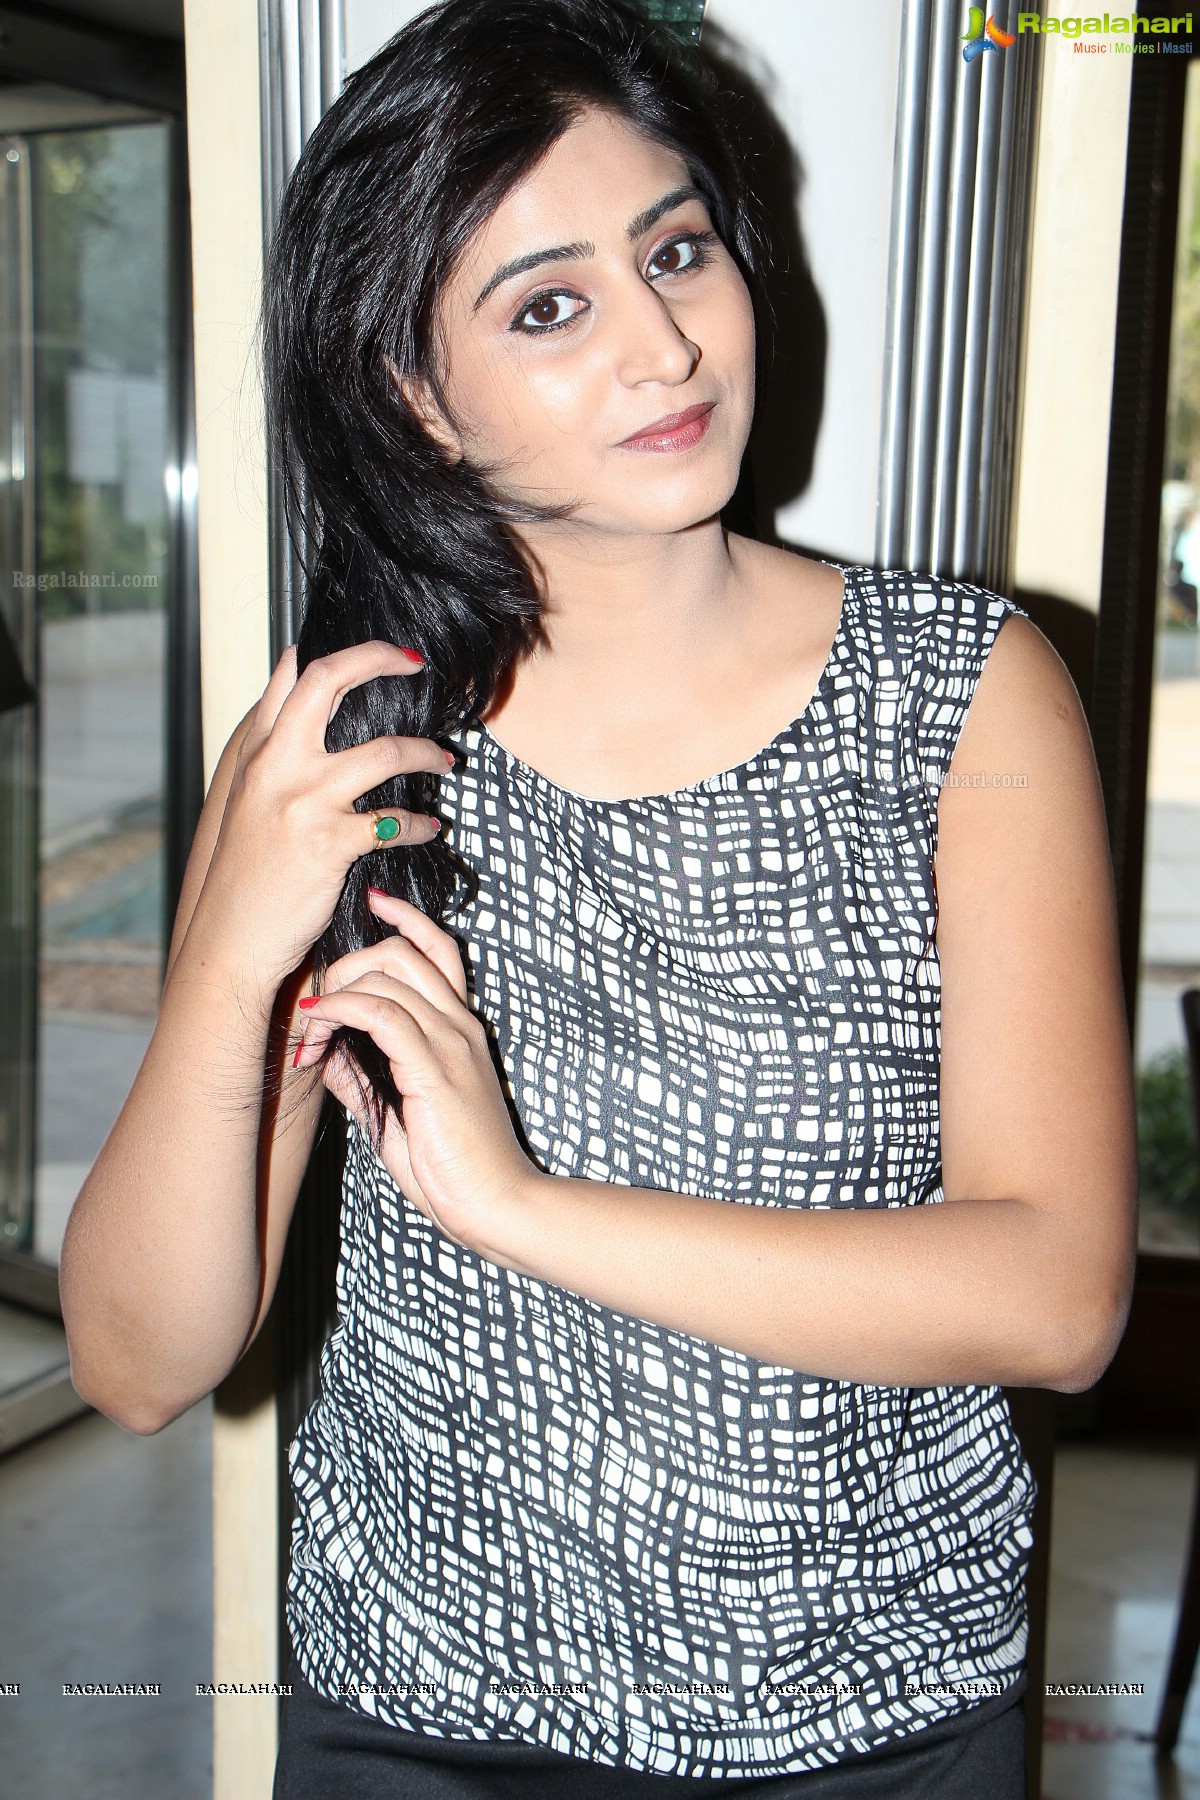 Shamili Agarwal